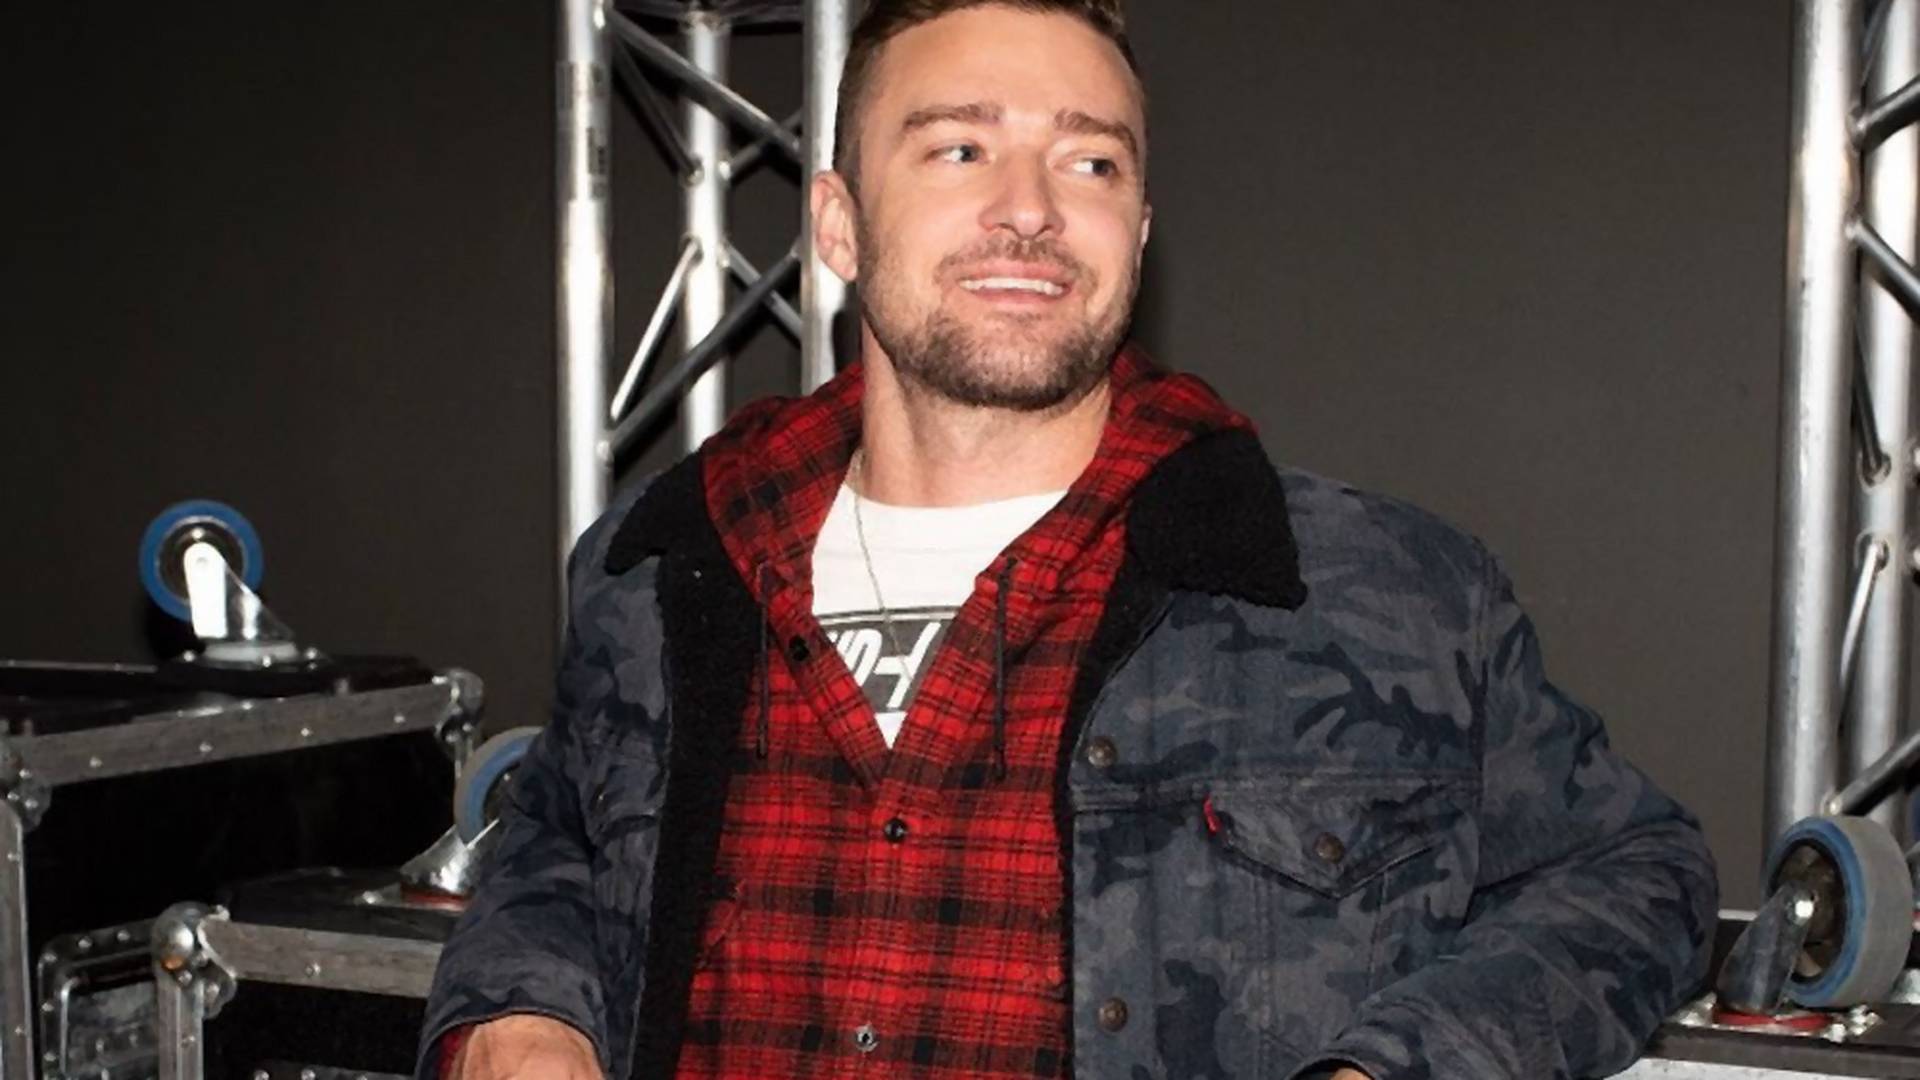 Tej zimy to Justin Timberlake wyznacza trendy. Wybraliśmy kurtki z futrzanym kołnierzem w stylu JT